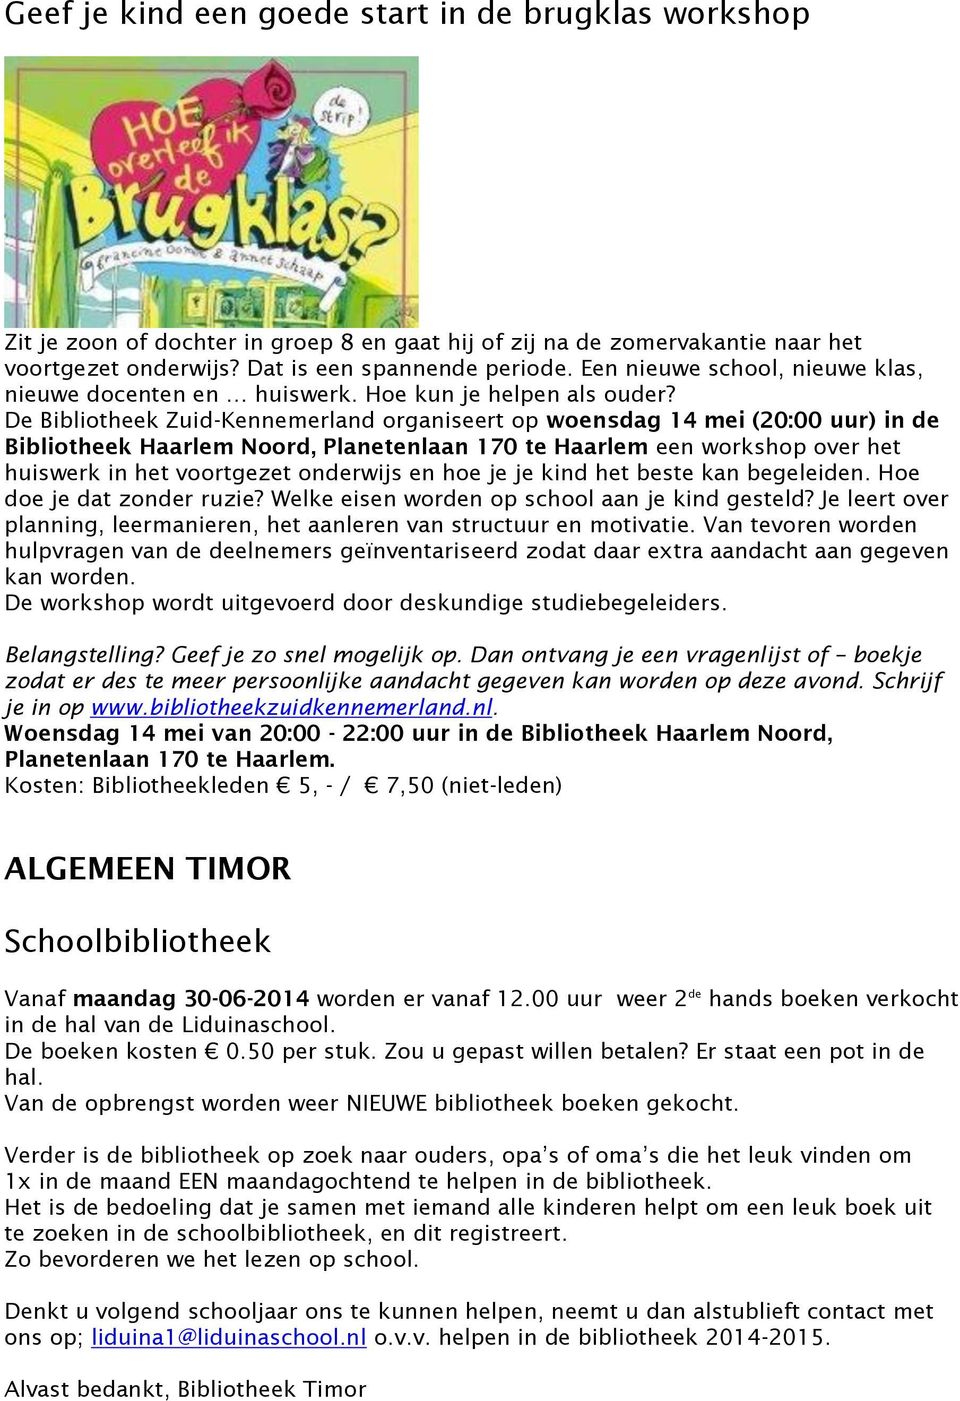 De Bibliotheek Zuid-Kennemerland organiseert op woensdag 14 mei (20:00 uur) in de Bibliotheek Haarlem Noord, Planetenlaan 170 te Haarlem een workshop over het huiswerk in het voortgezet onderwijs en